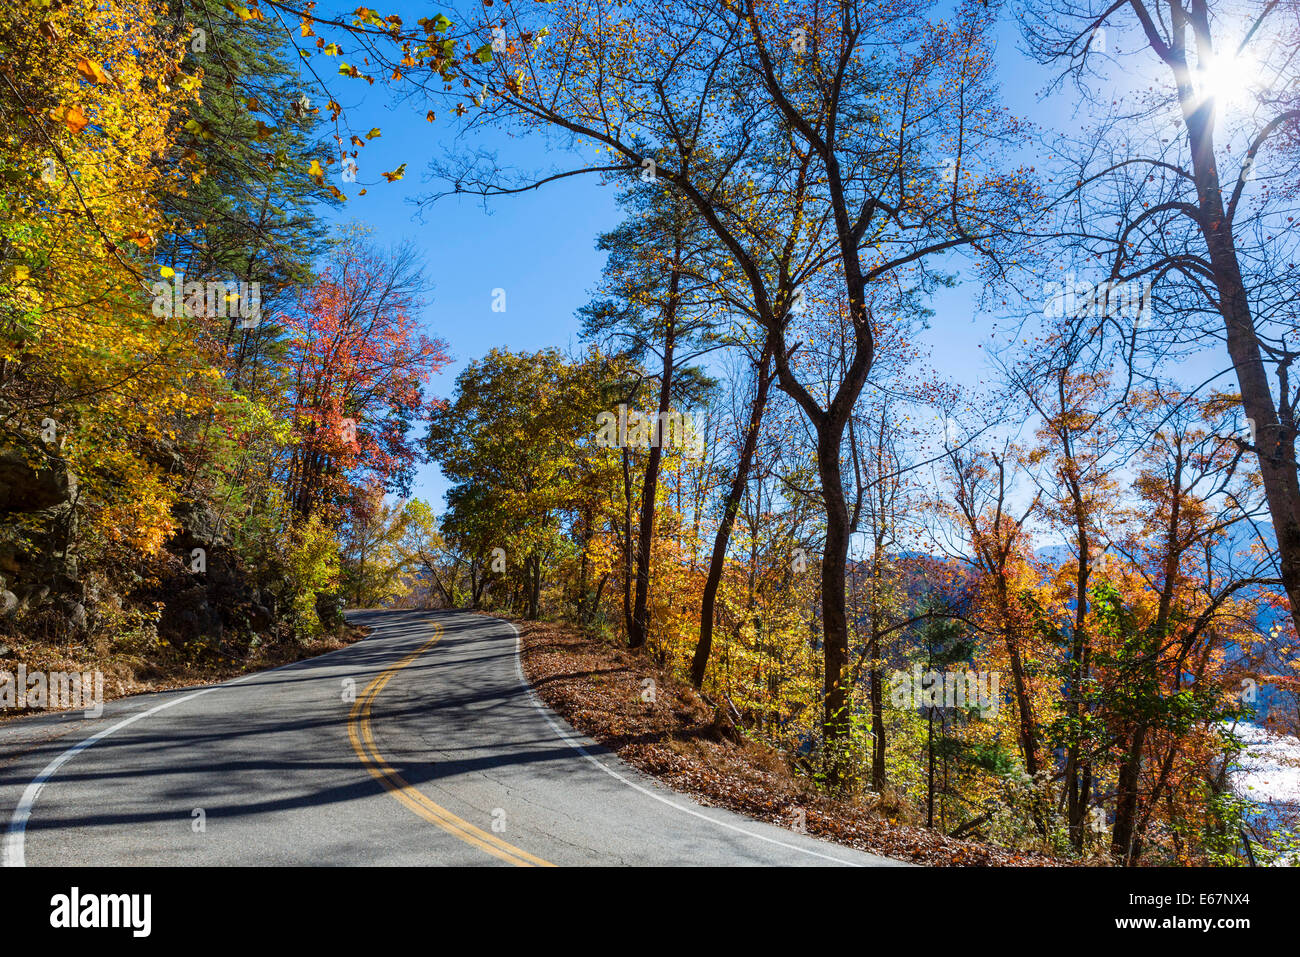 Coda del drago road, US 129, vicino si occupa spazio appena a sud del Parco Nazionale di Great Smoky Mountains, Tennessee, Stati Uniti d'America Foto Stock